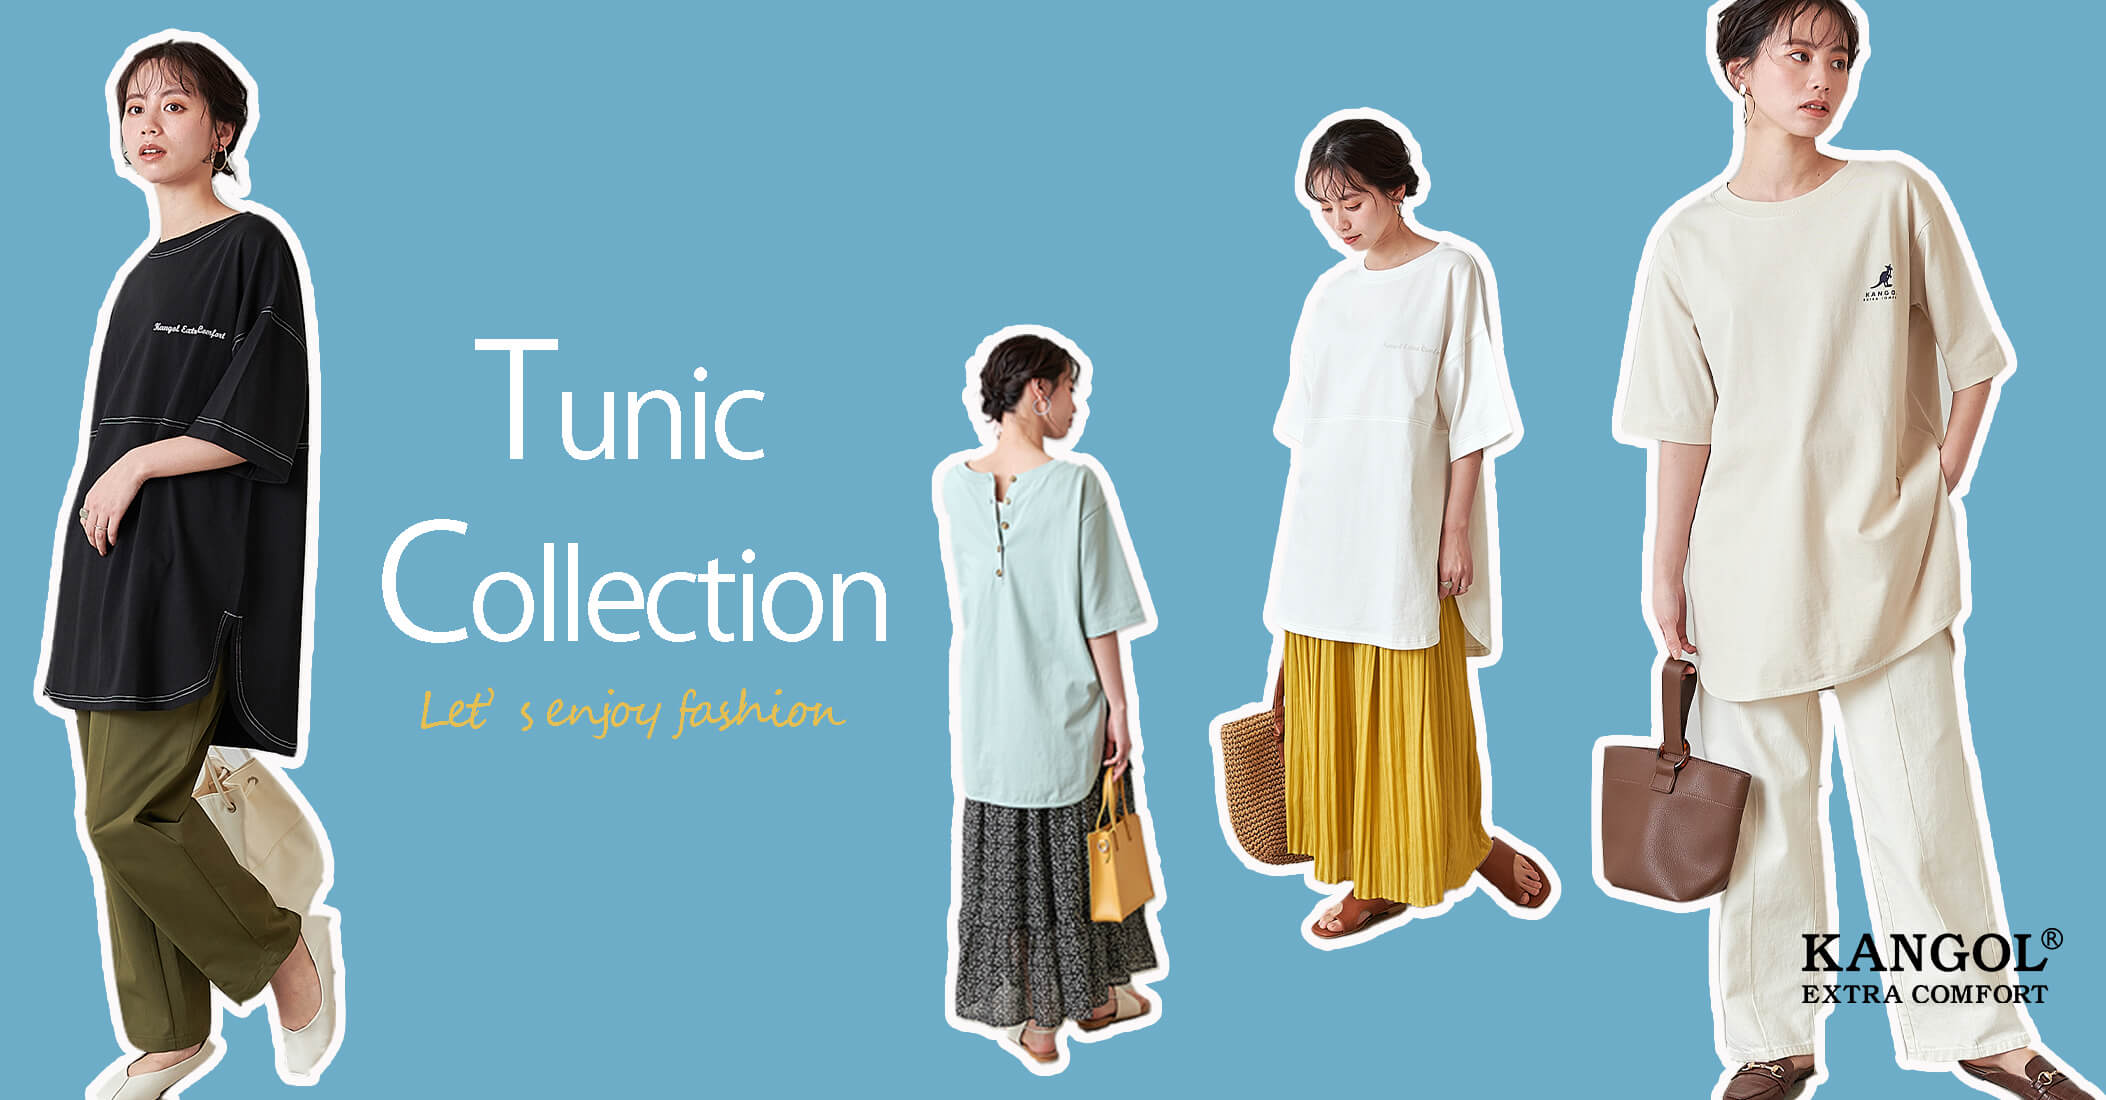 KANGOL tunic collection